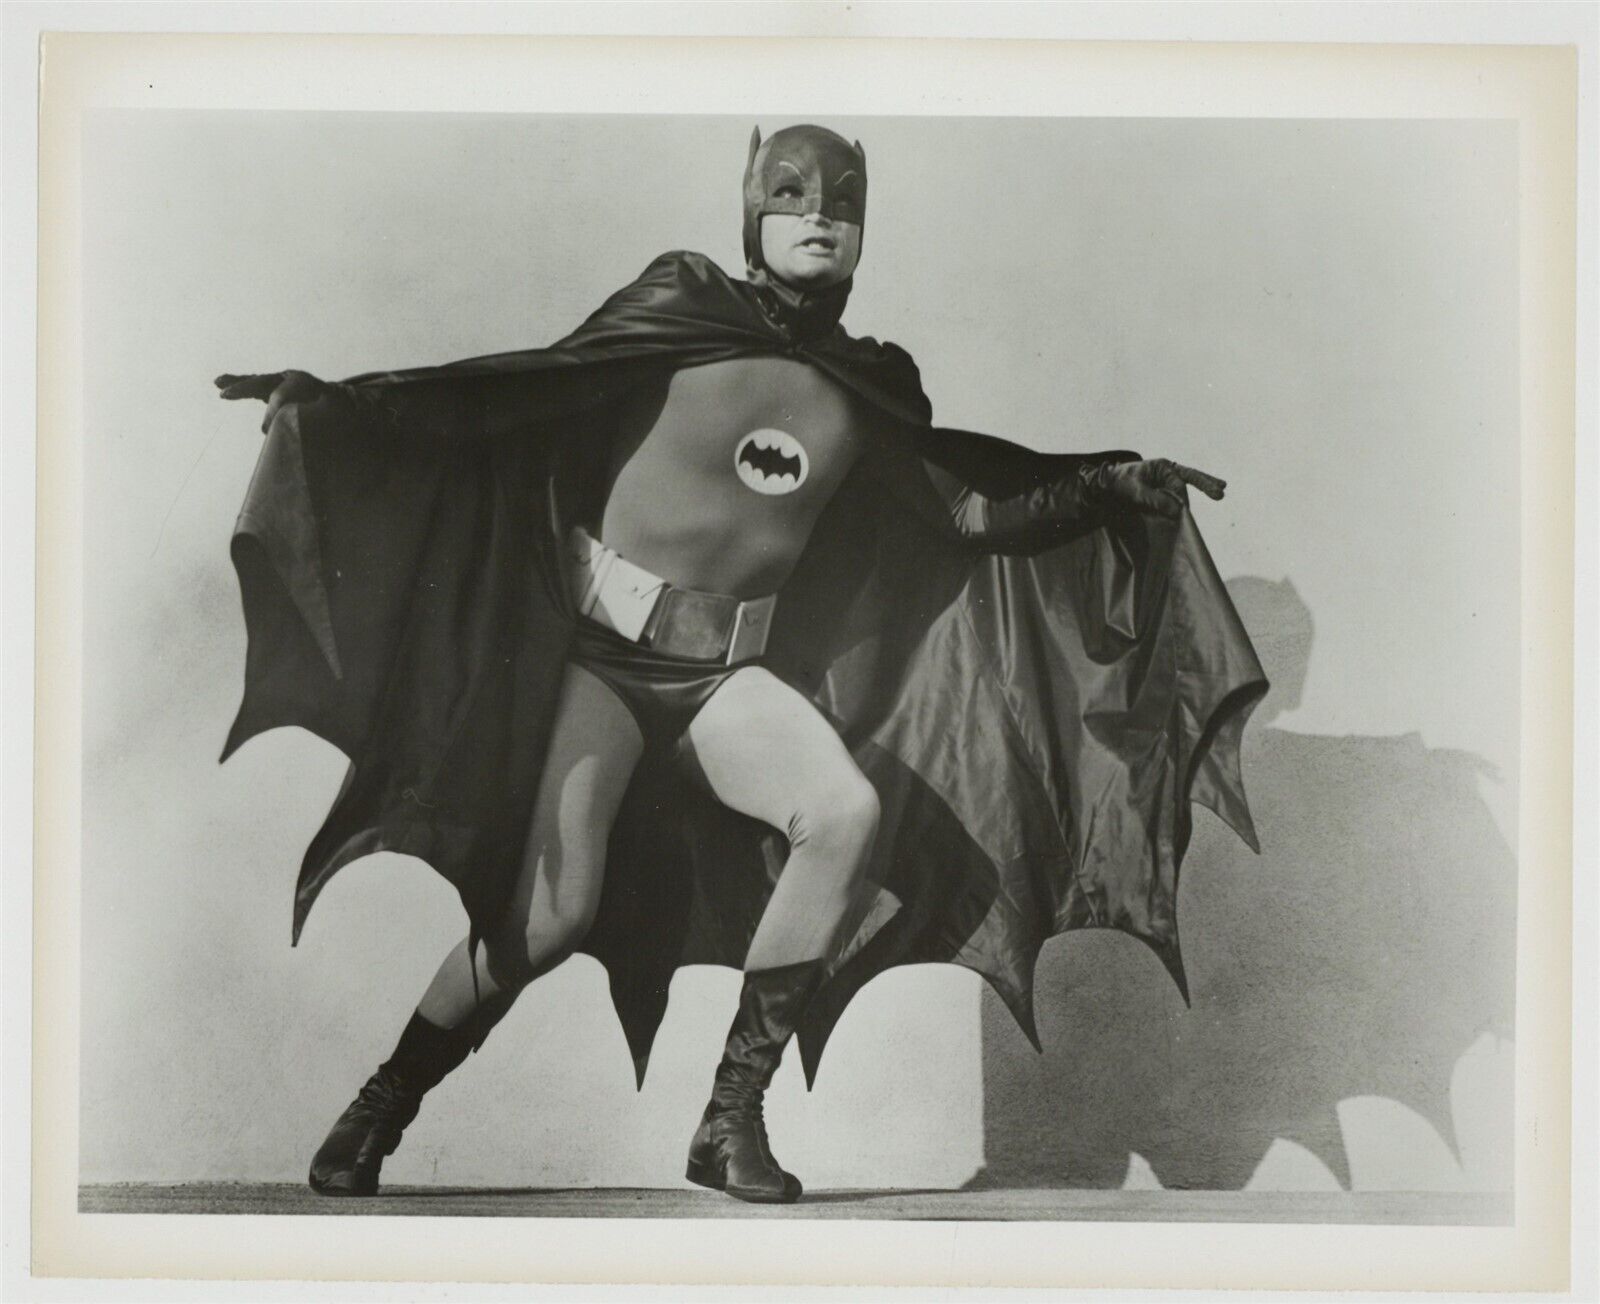 Batman TV Show 1966 Original Press Photo 8x10 Adam West DC Comics Caped Crusader